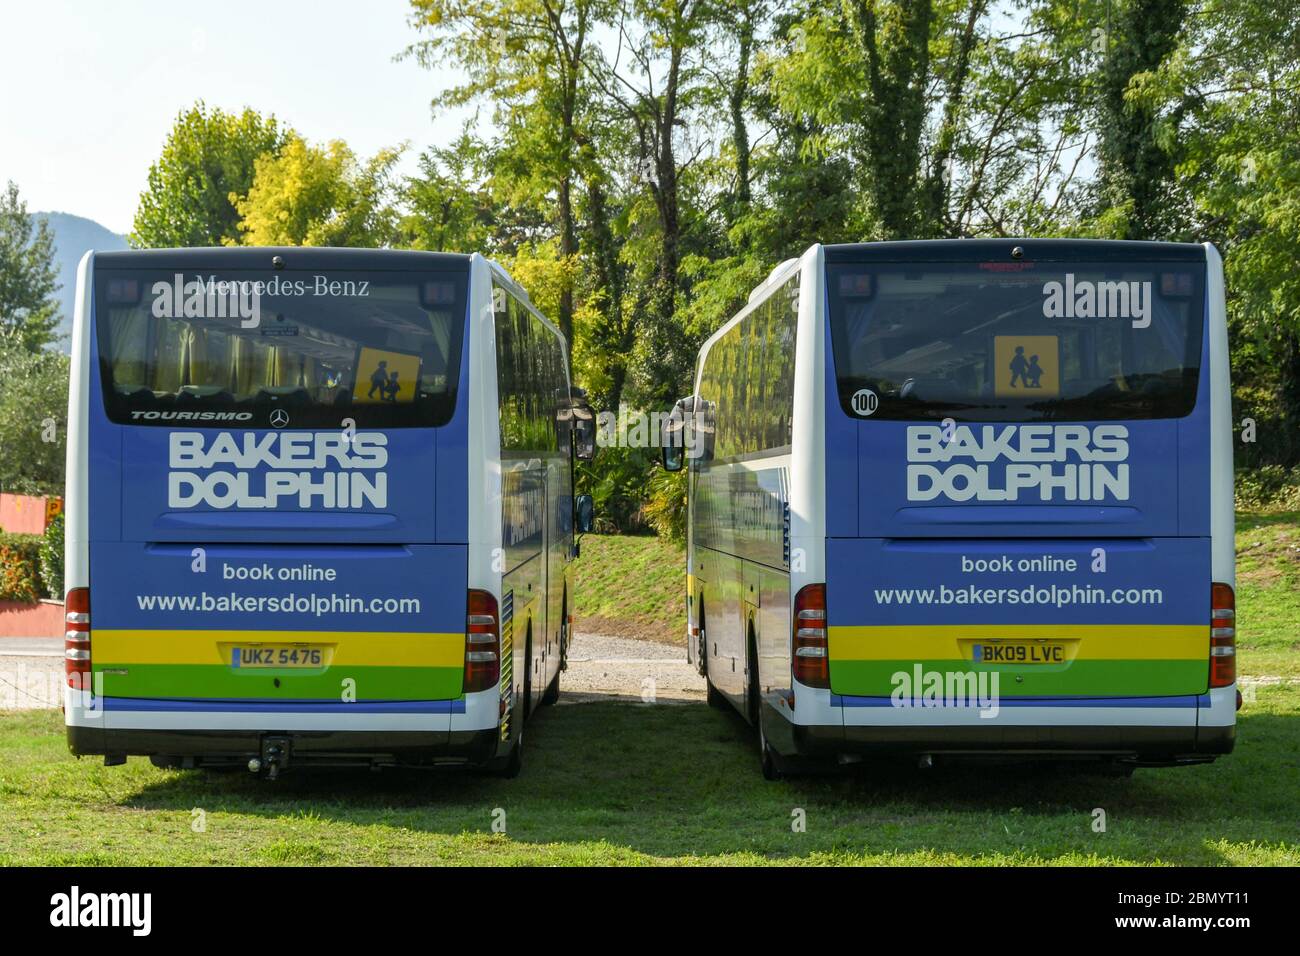 GARDA, GARDASEE, ITALIEN - SEPTEMBER 2018: Zwei Busse des britischen Reiseunternehmens Bakers Dolphin parkten nebeneinander auf dem Hotelgelände Stockfoto